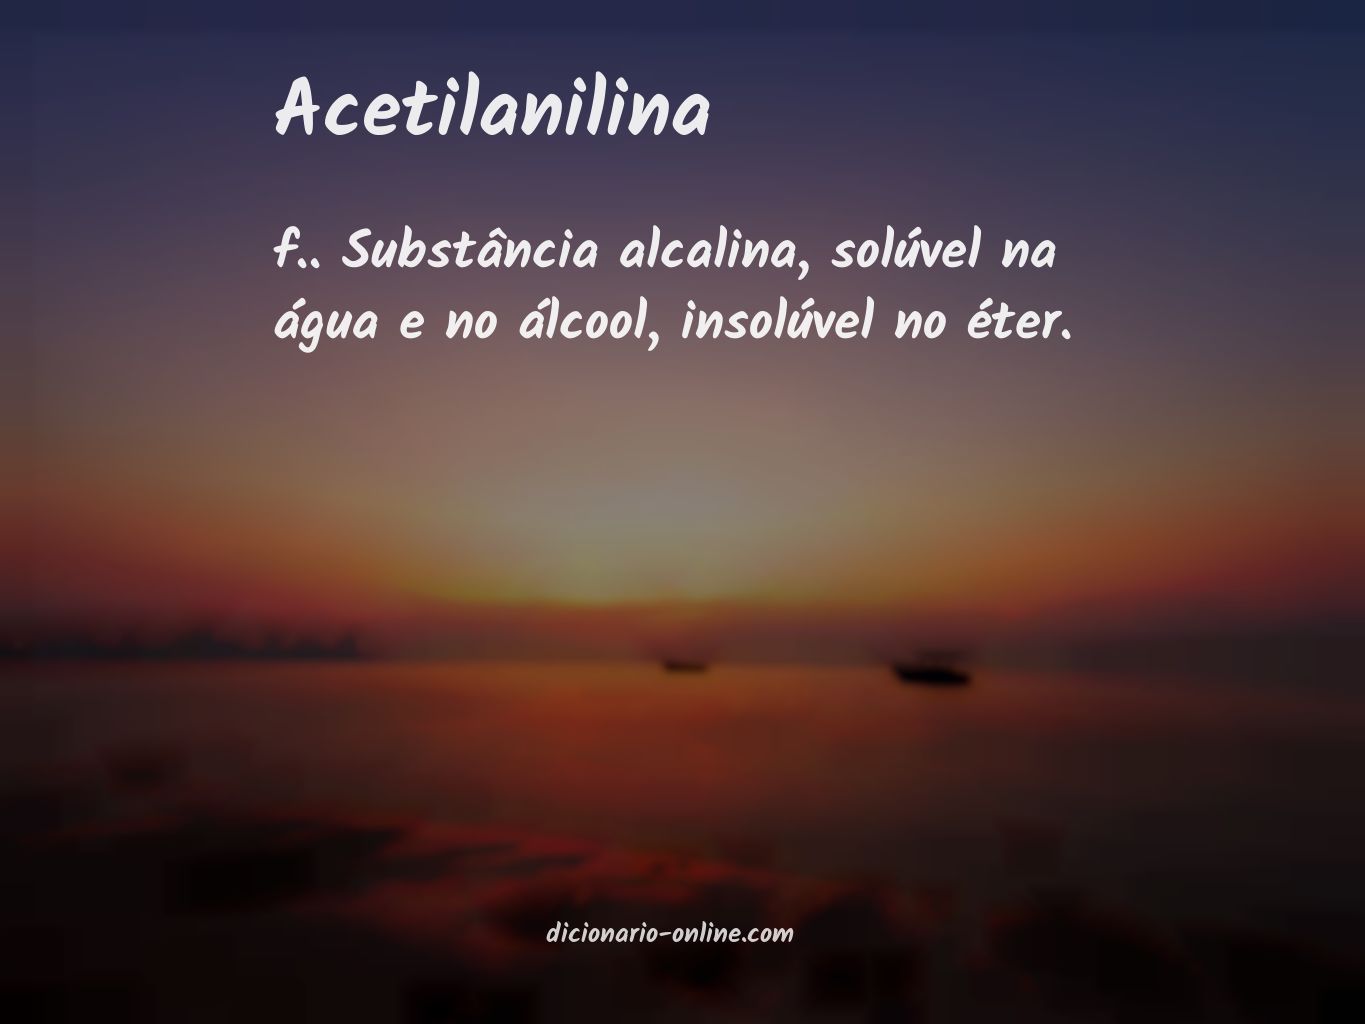 Significado de acetilanilina